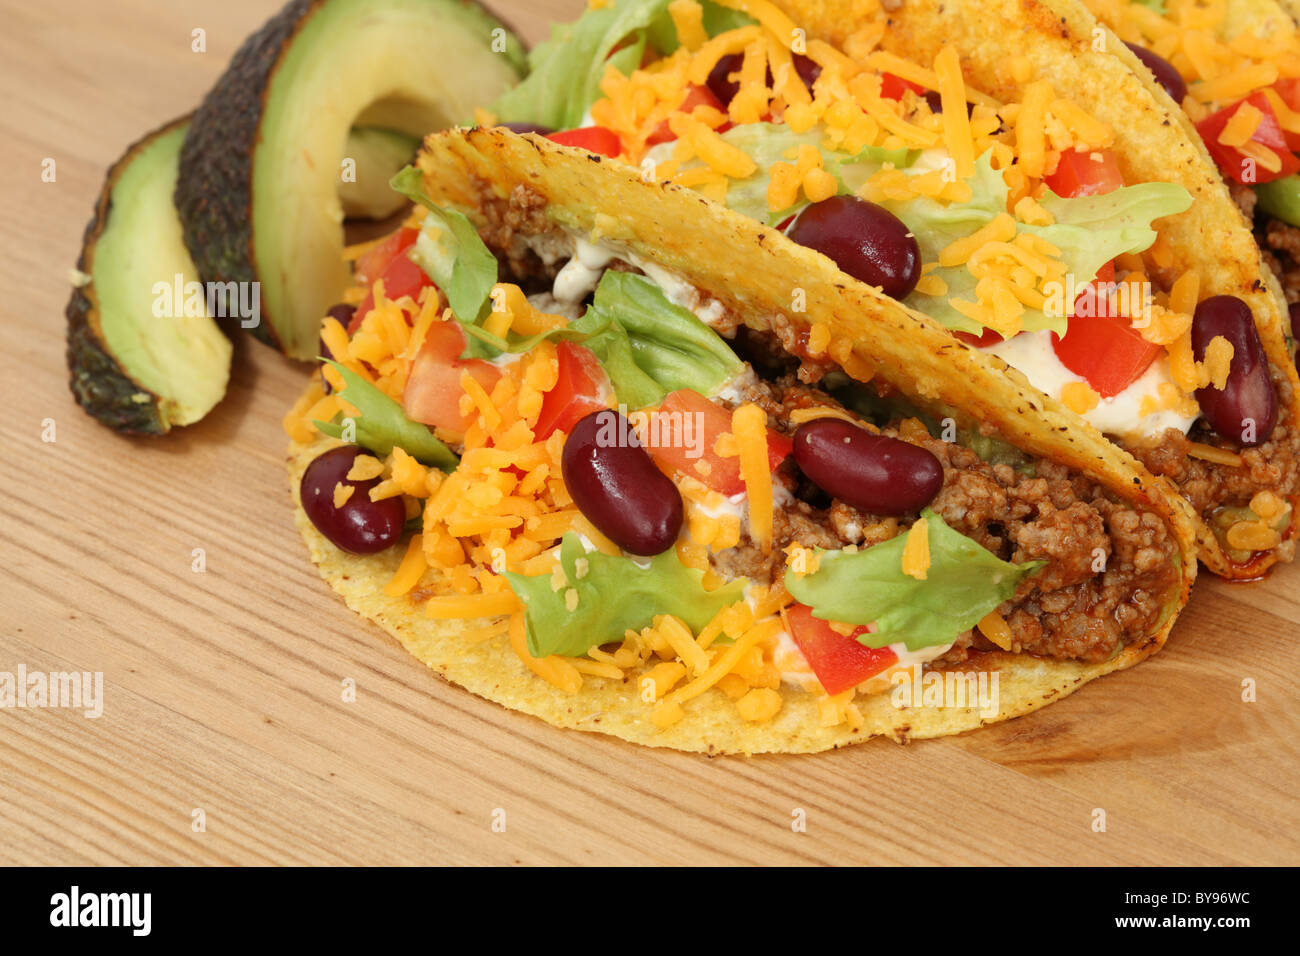 Mexikanisches Essen - Tacos gefüllt mit Hackfleisch / Faschiertes, Käse und Bohnen Stockfoto